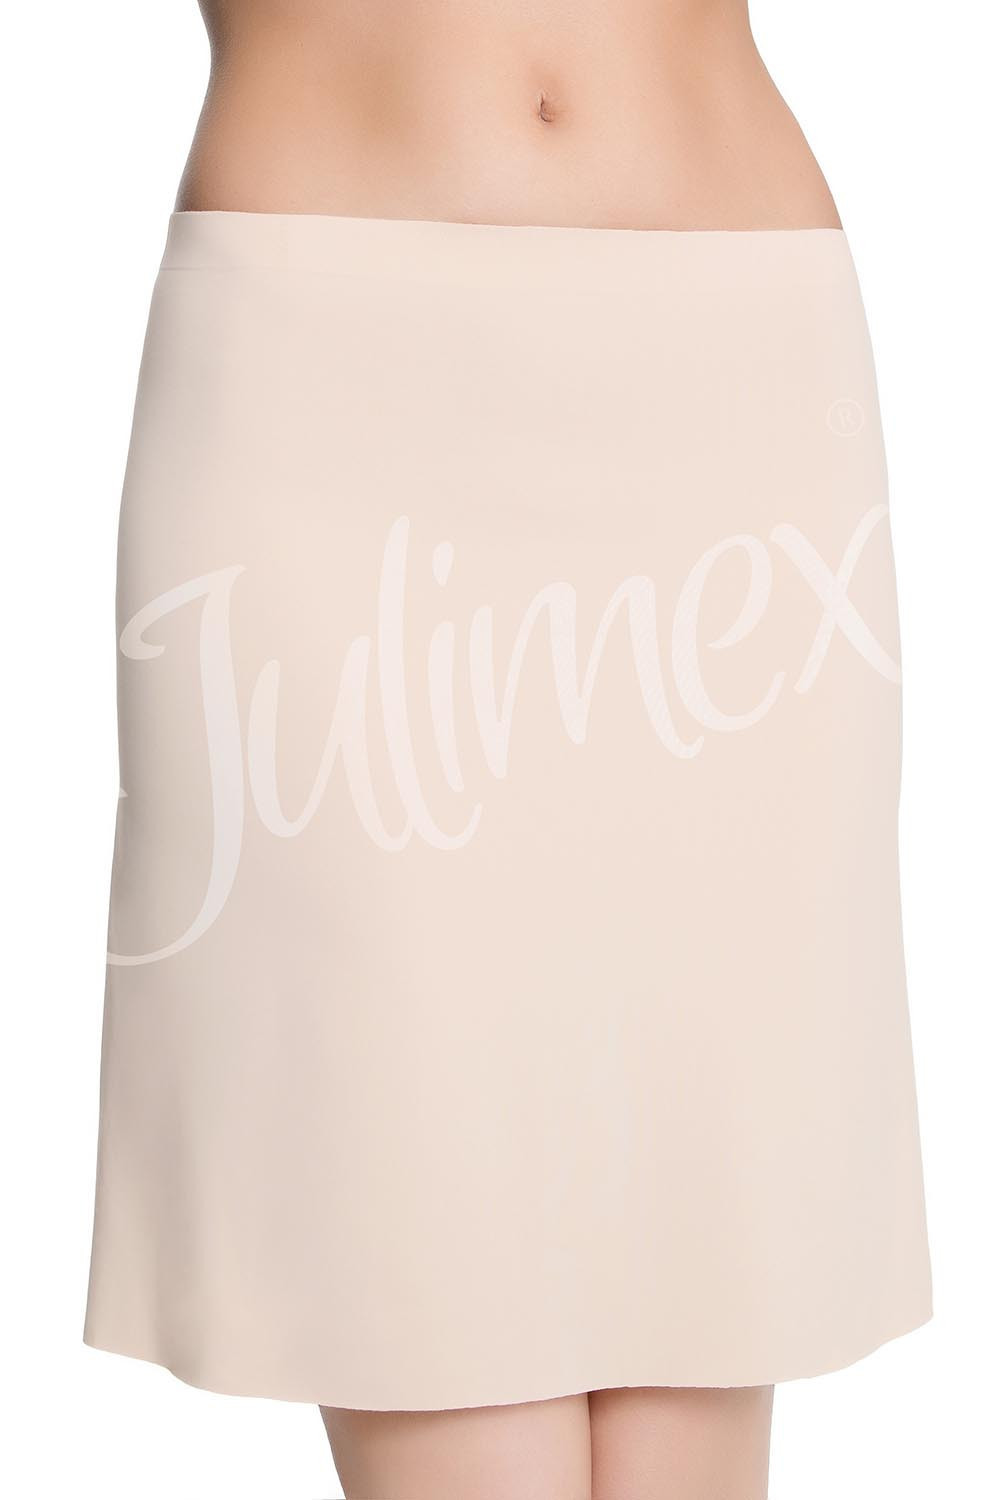 Julimex Półhalka Soft & Smooth kolor:natural L